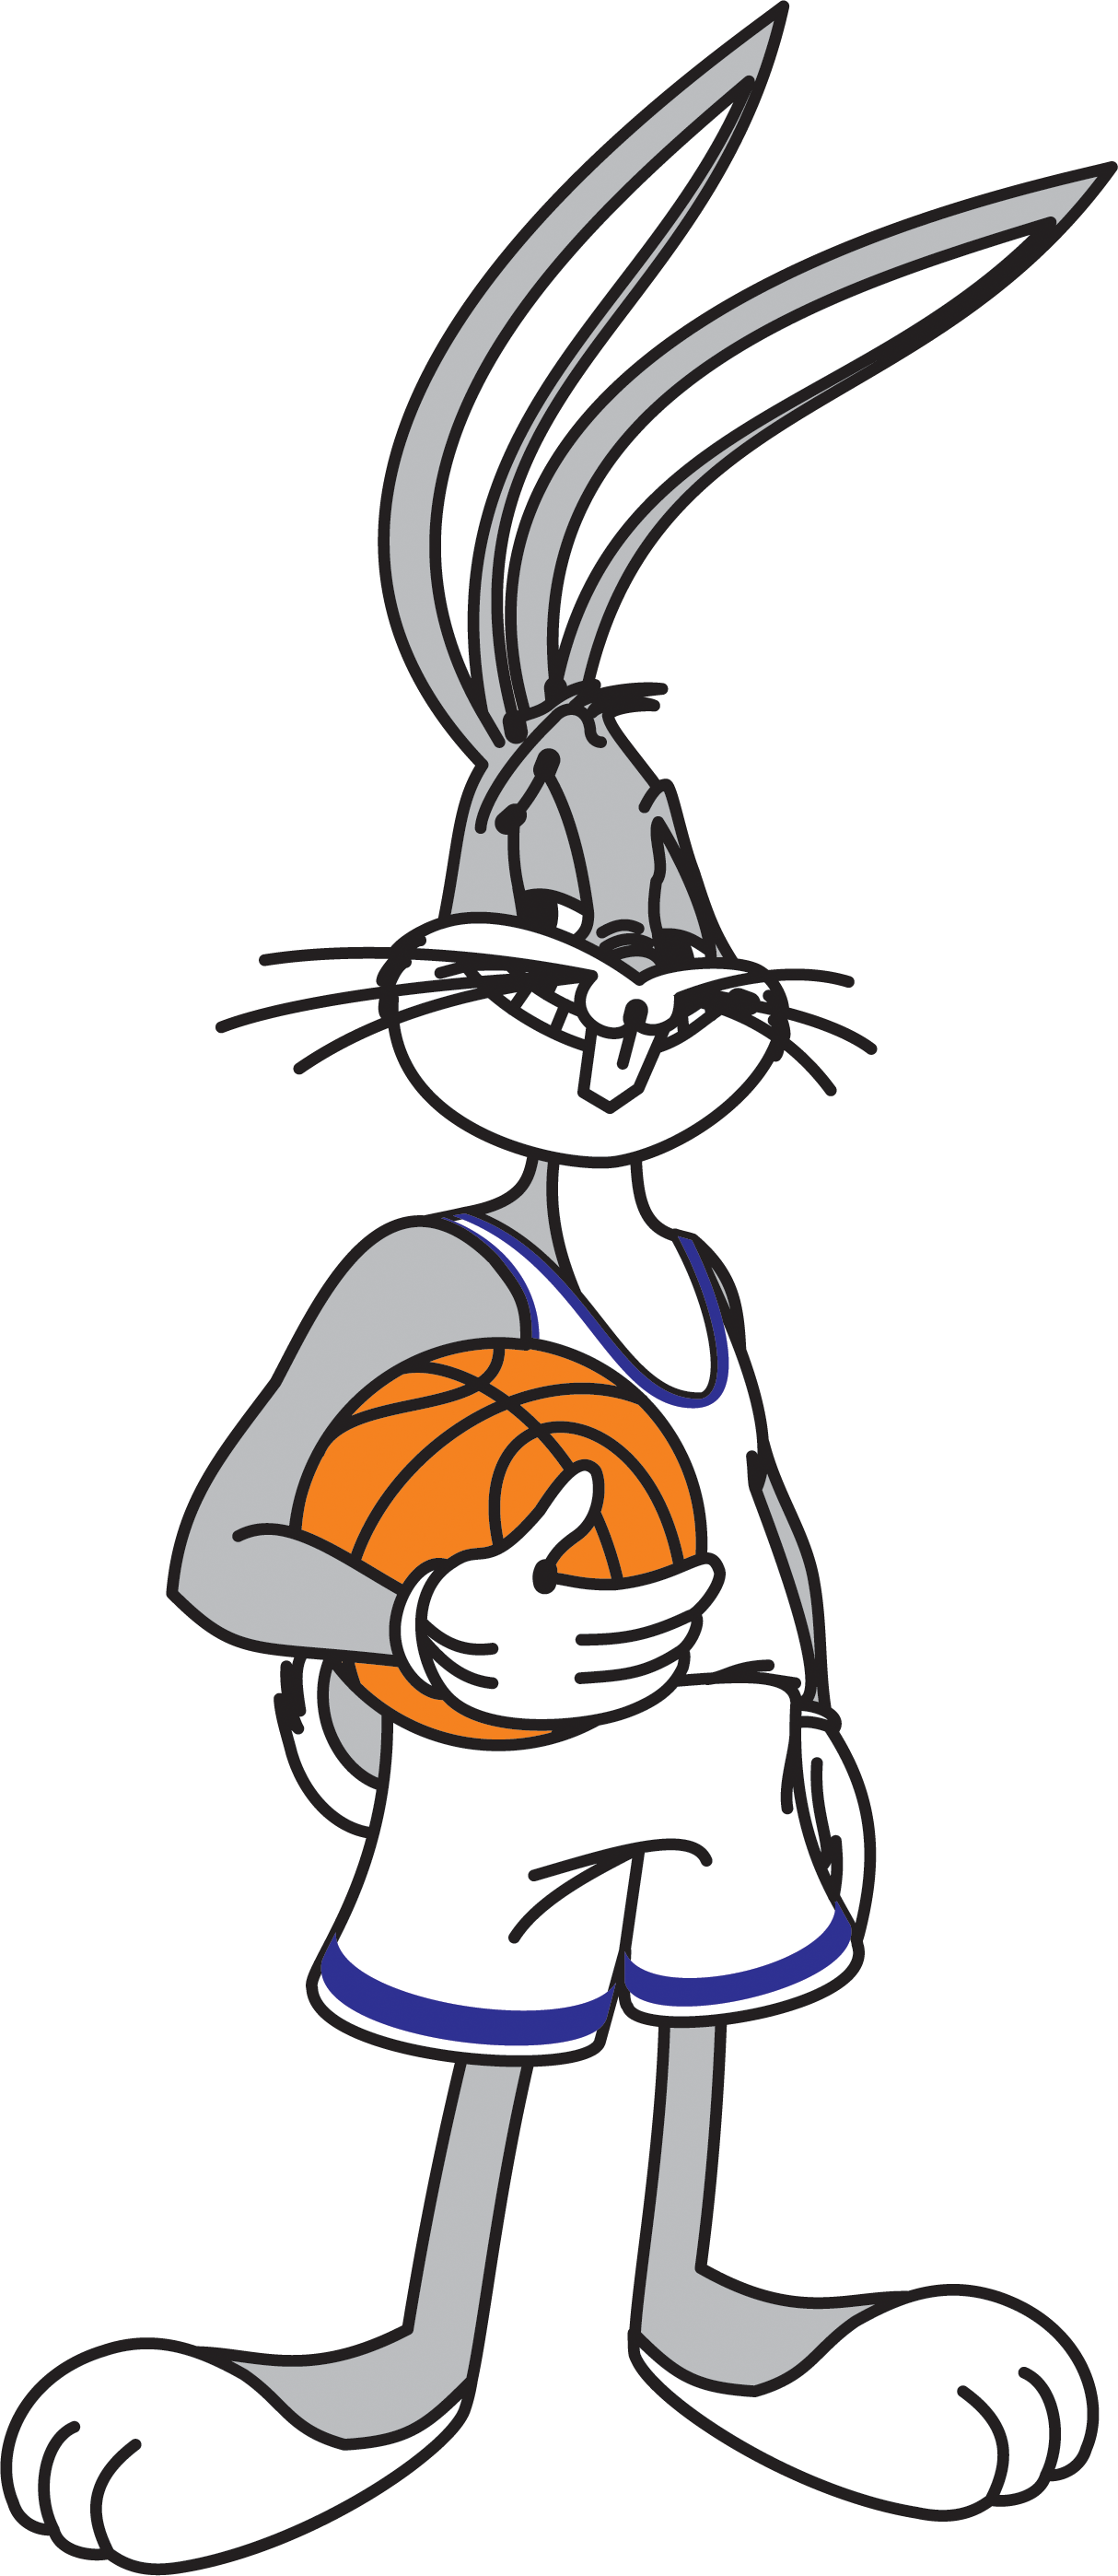 Бакс бани баскетбол. Багз Банни баскетбол. Кролик Багз Банни баскетбол. Луни Тюнз заяц. Заяц баскетболист Банни Бакс.